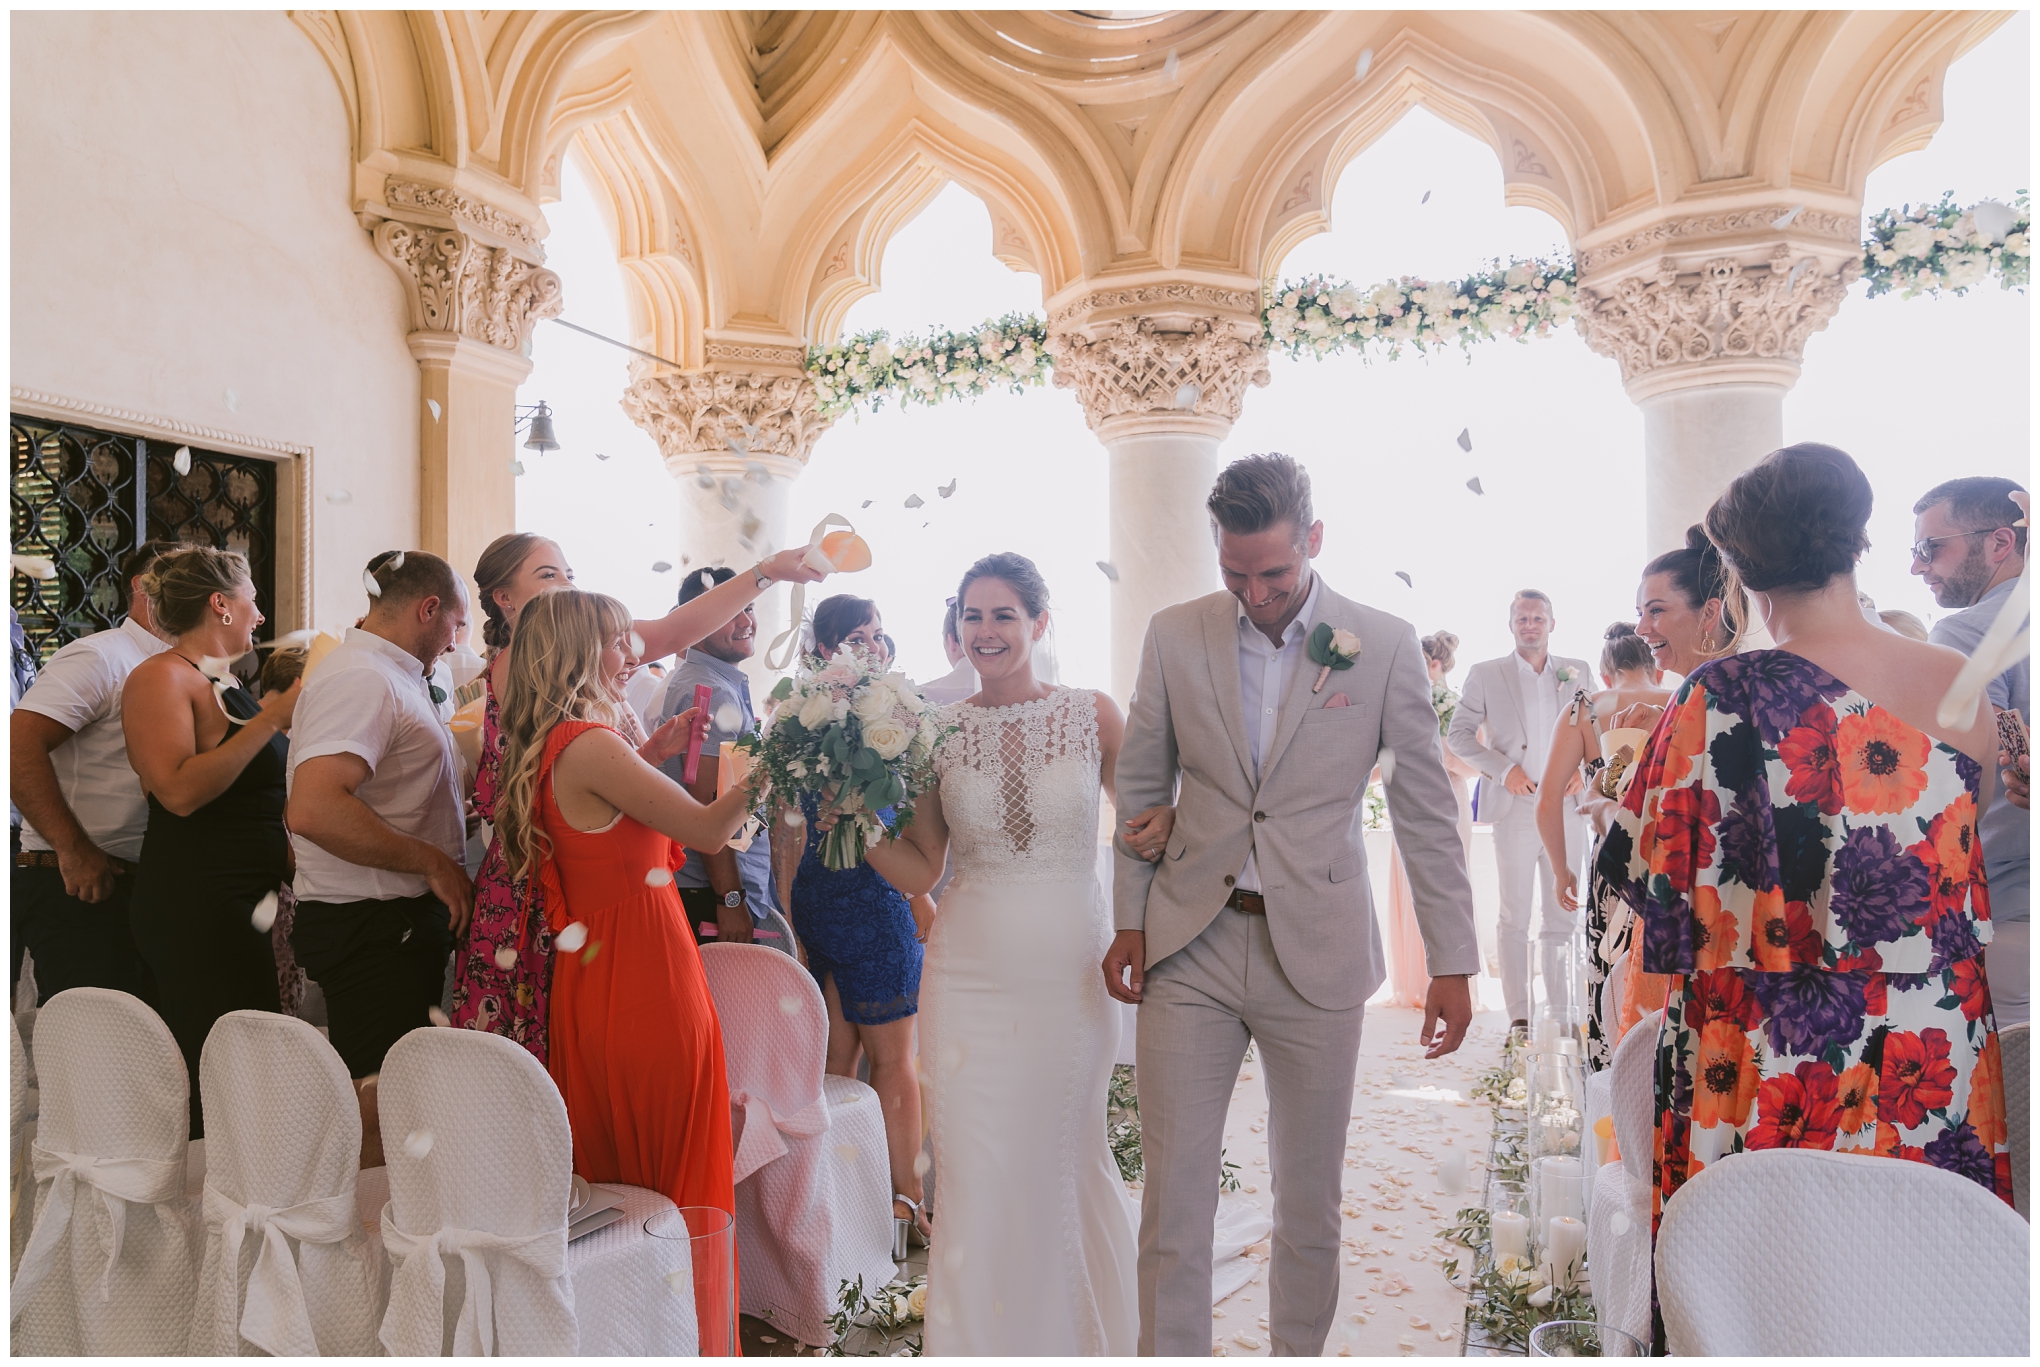 Isola Del Garda Wedding Ceremony, bride and groom rose petal confetti Shower